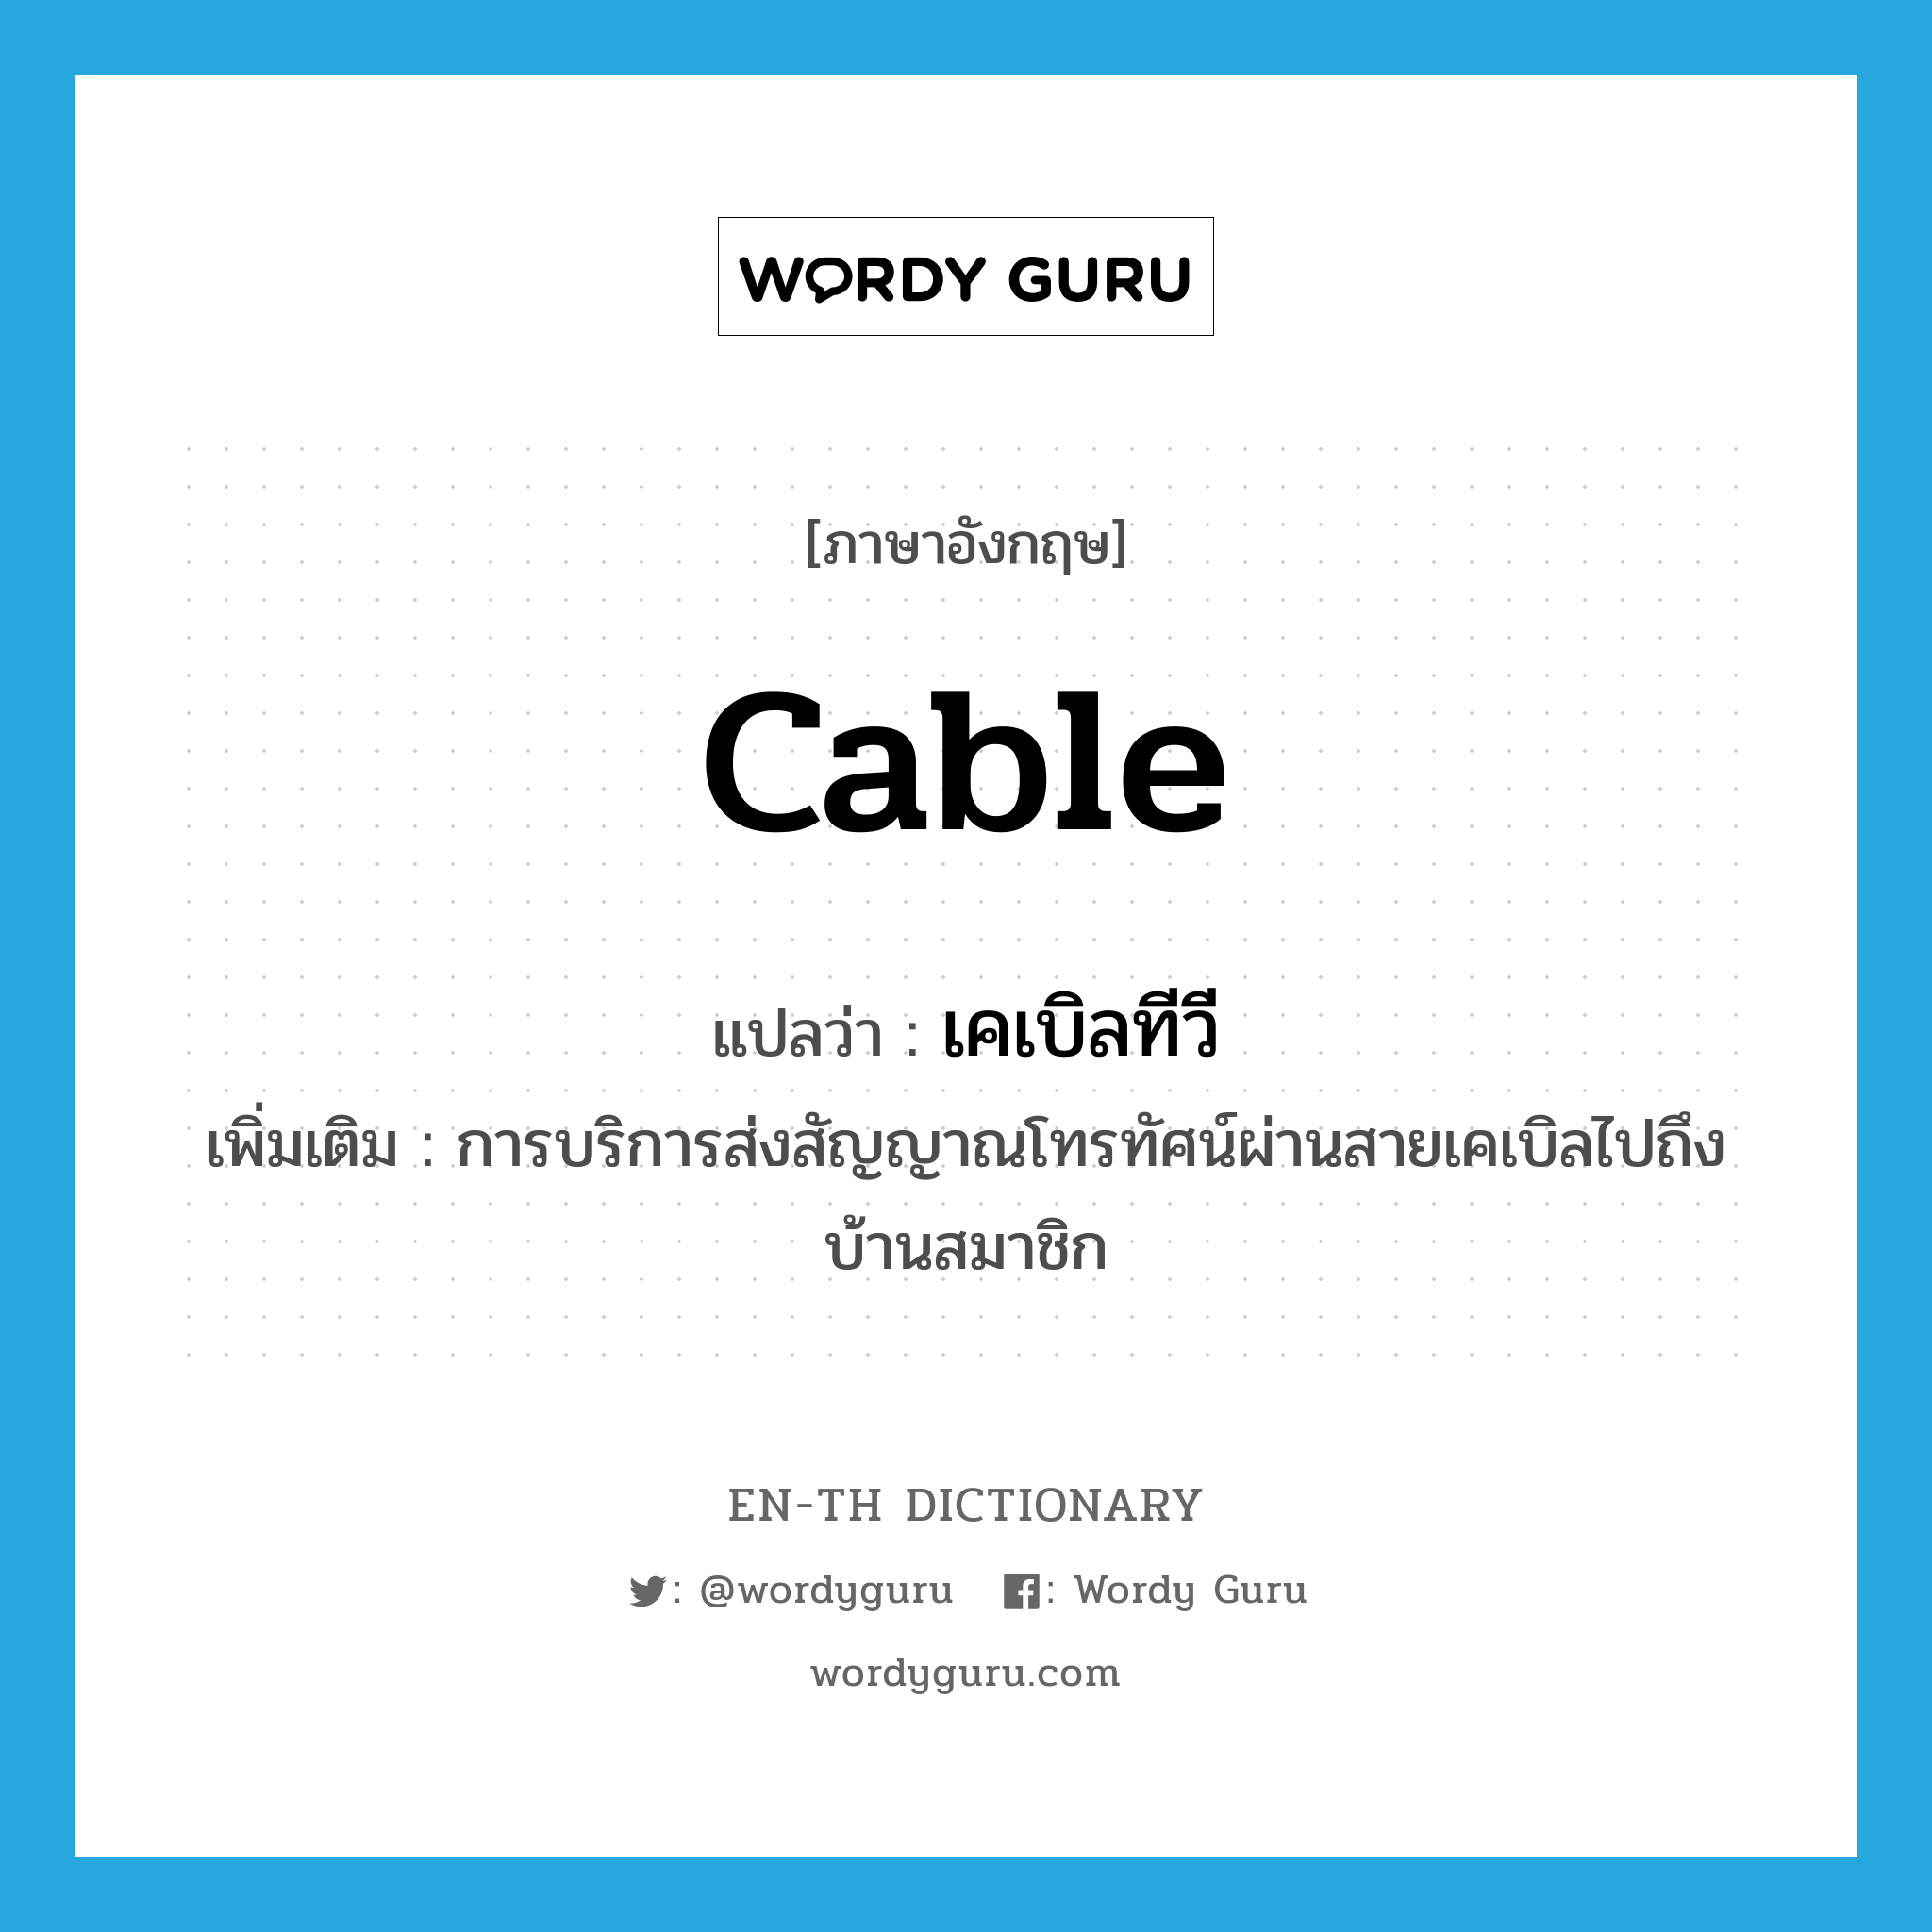 cable แปลว่า?, คำศัพท์ภาษาอังกฤษ cable แปลว่า เคเบิลทีวี ประเภท N เพิ่มเติม การบริการส่งสัญญาณโทรทัศน์ผ่านสายเคเบิลไปถึงบ้านสมาชิก หมวด N